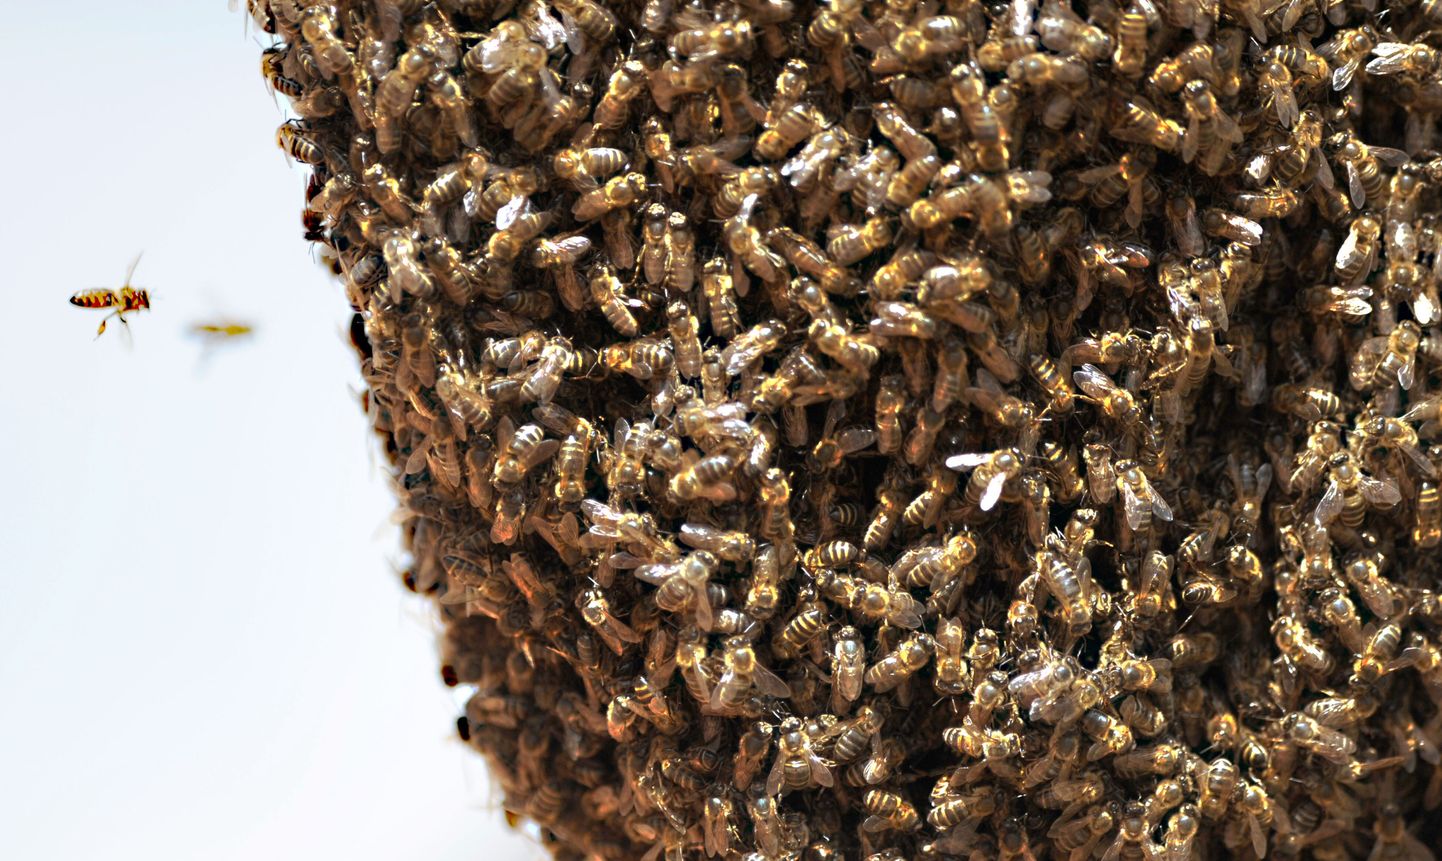 Ameeriklane sai mesilastelt üle 200 korra nõelata